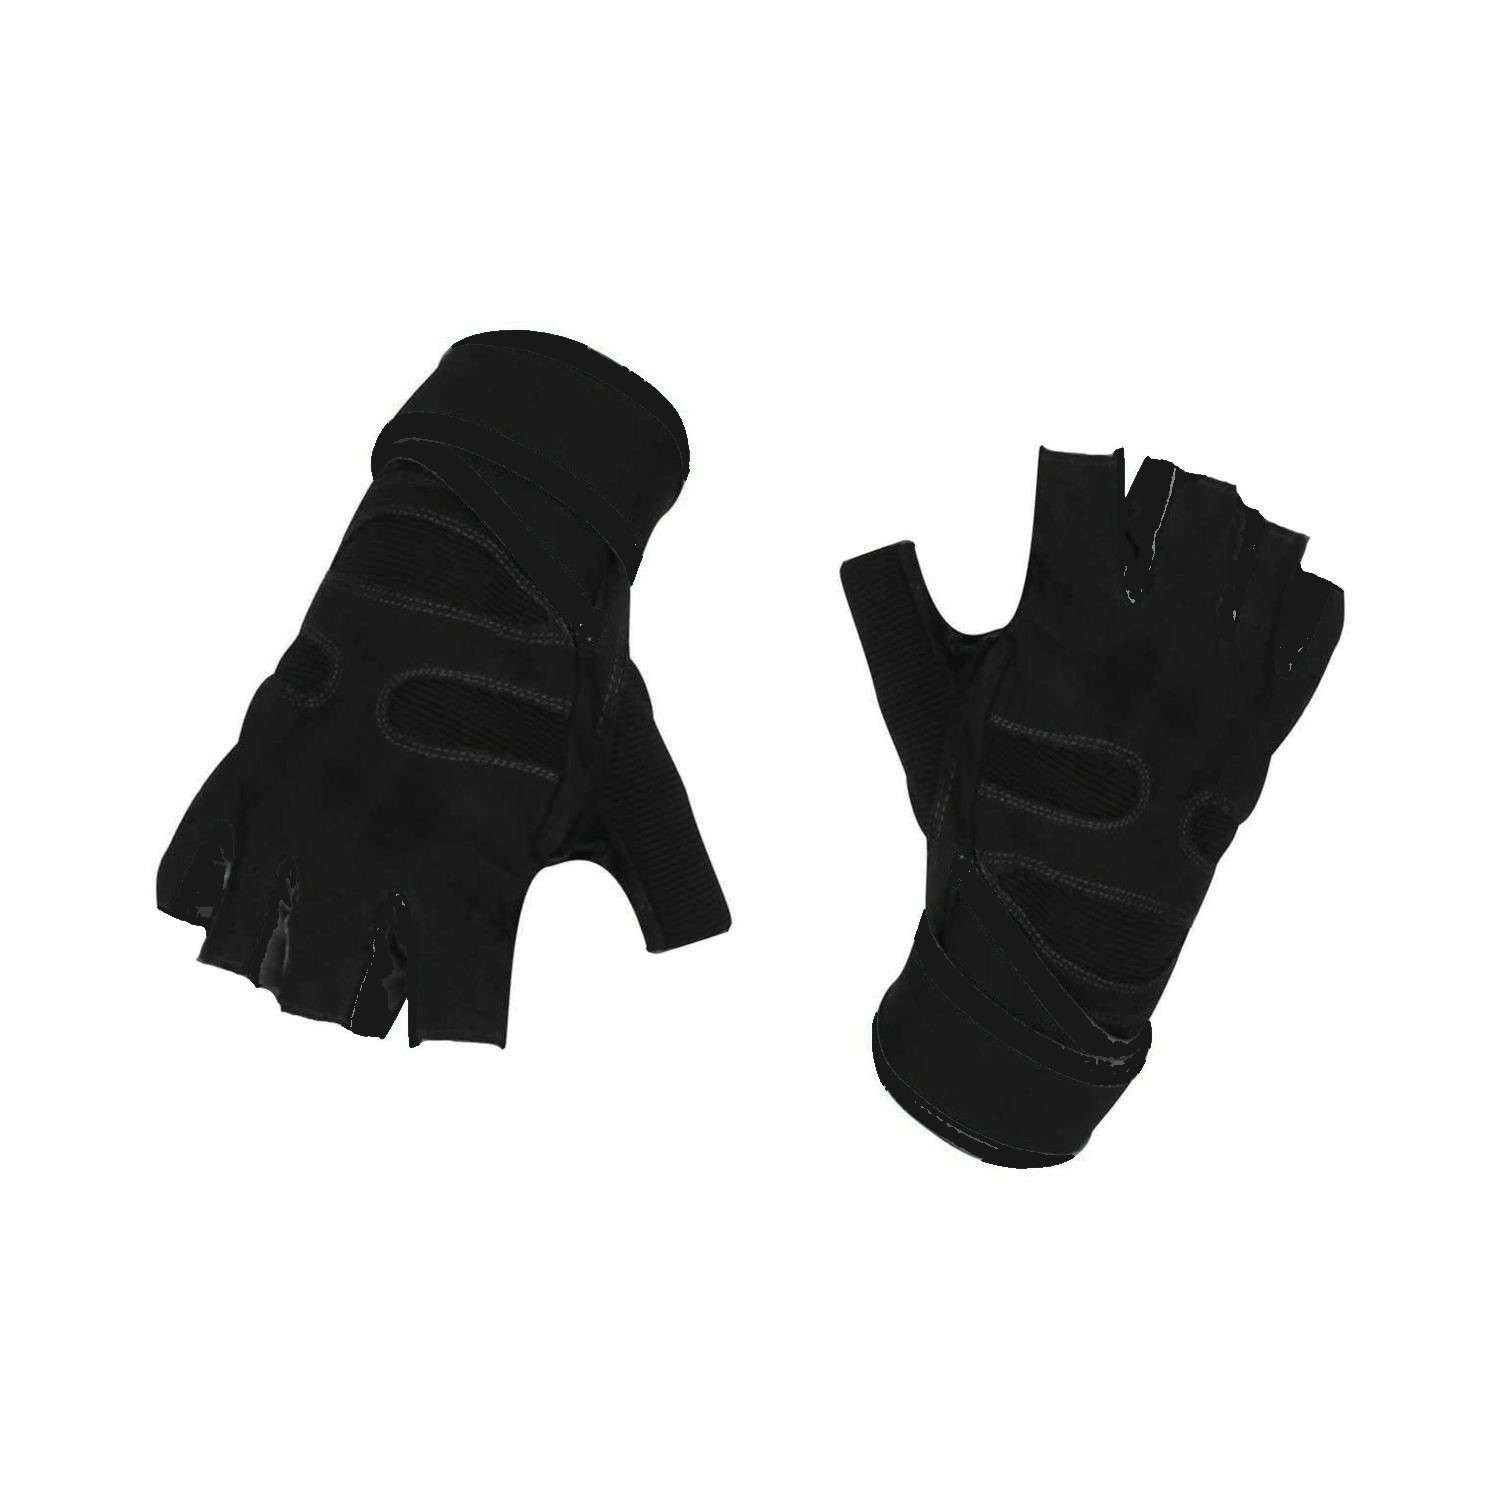 Нейлоновые перчатки NPOSS противоскользящие черные размер L - фото 1